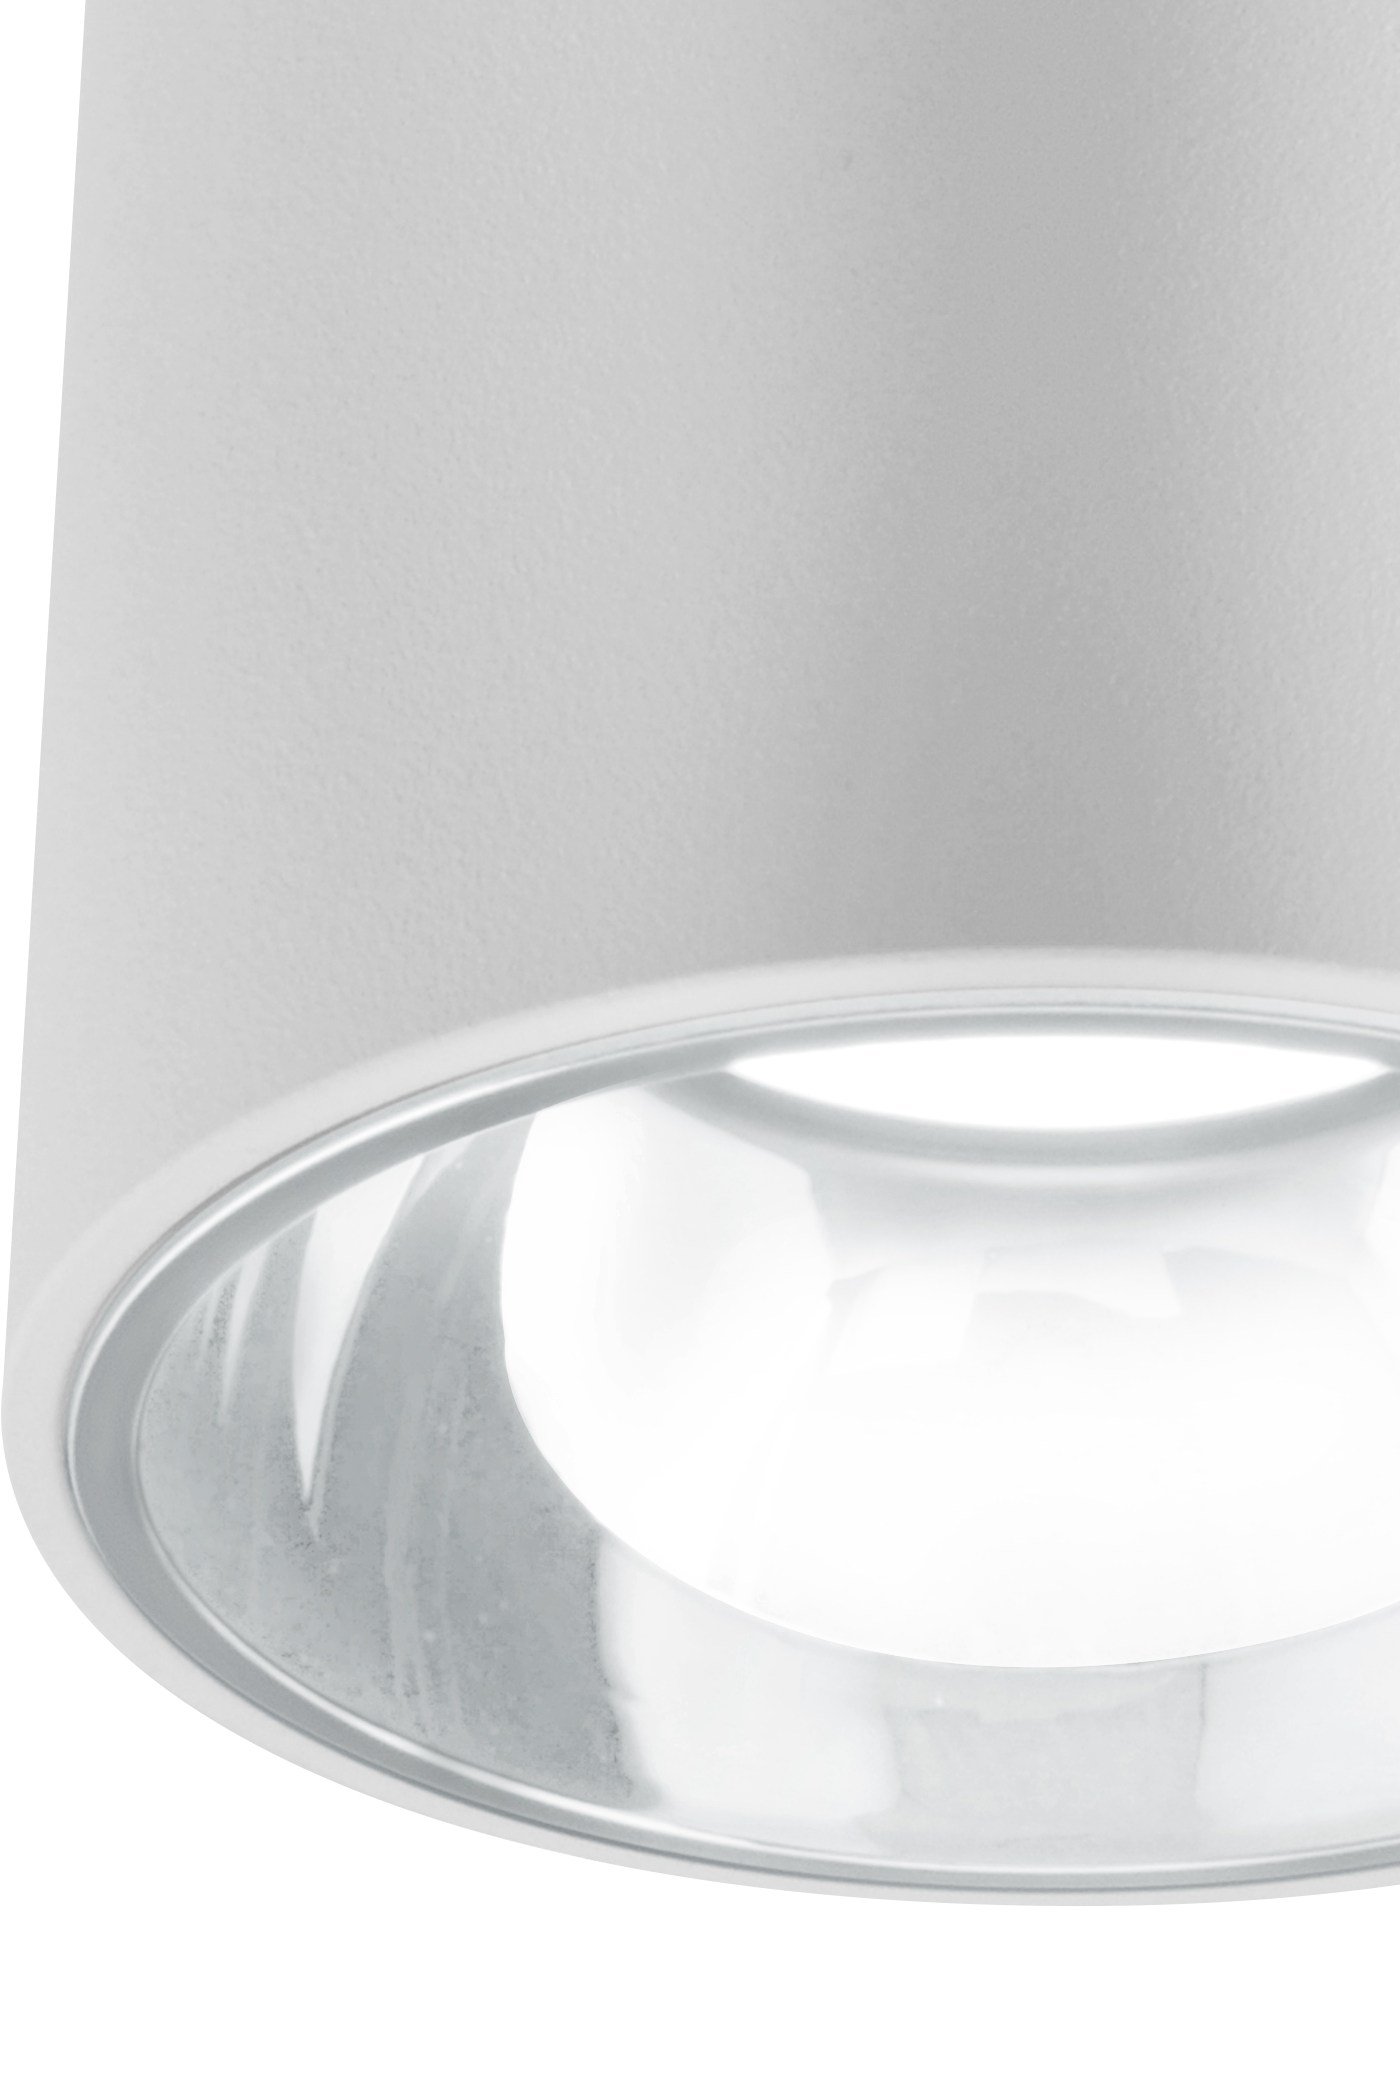   
                        Точковий світильник BLITZ (Німеччина) 29261    
                         у стилі хай-тек.  
                                                Форма: коло.                                                                          фото 2